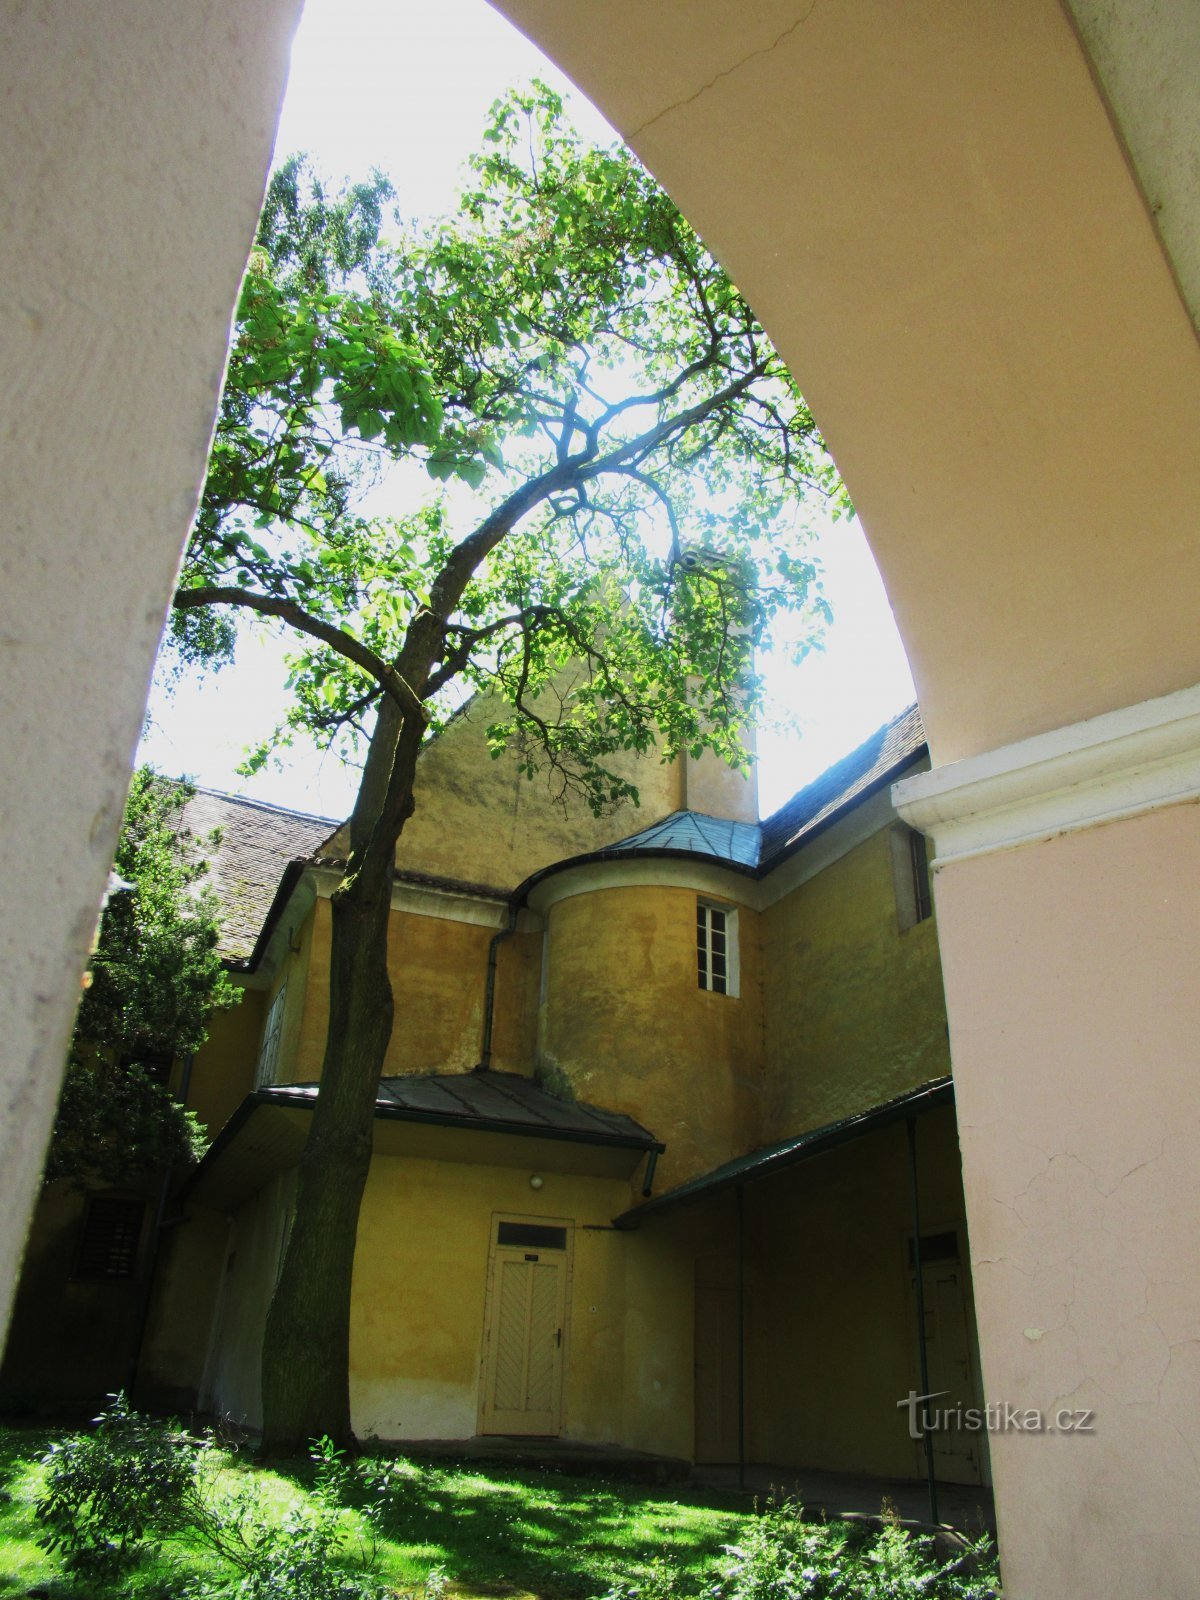 Casa de veraneio do castelo em Opočno